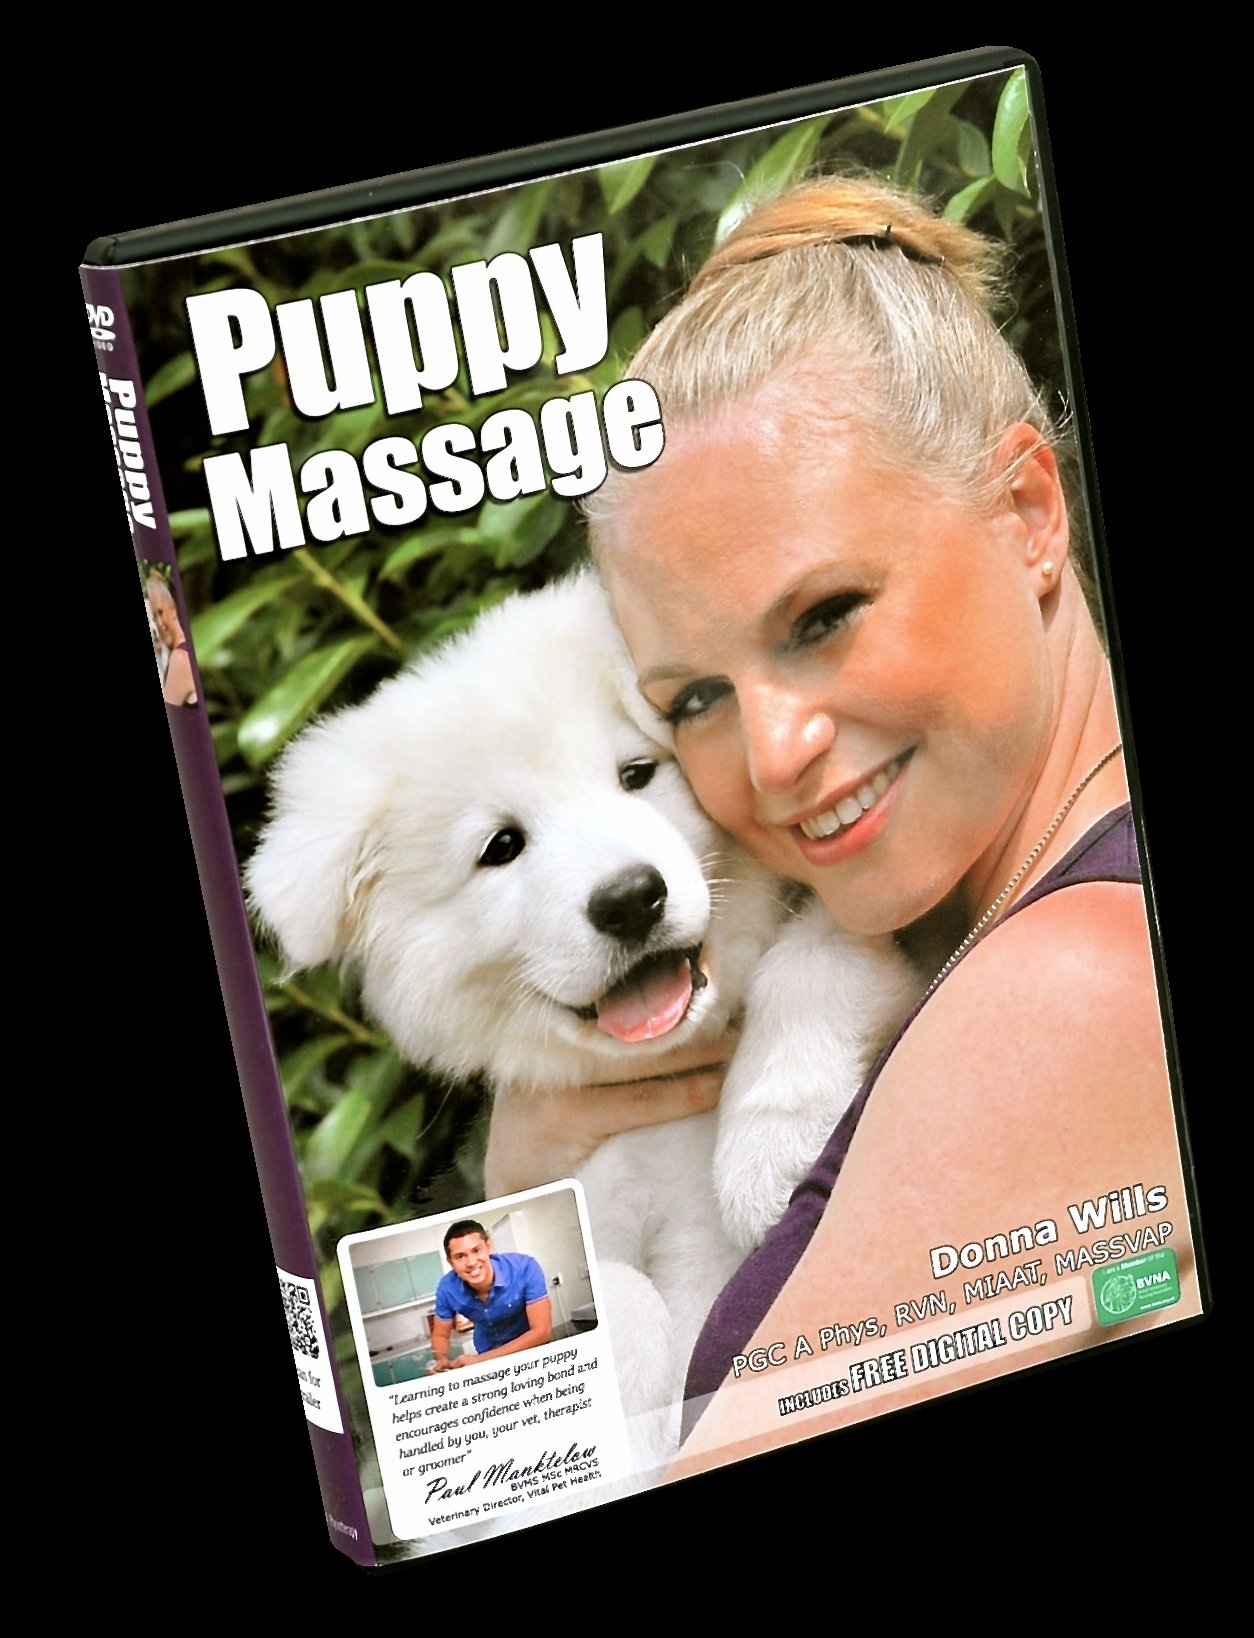 Puppy massage DVD